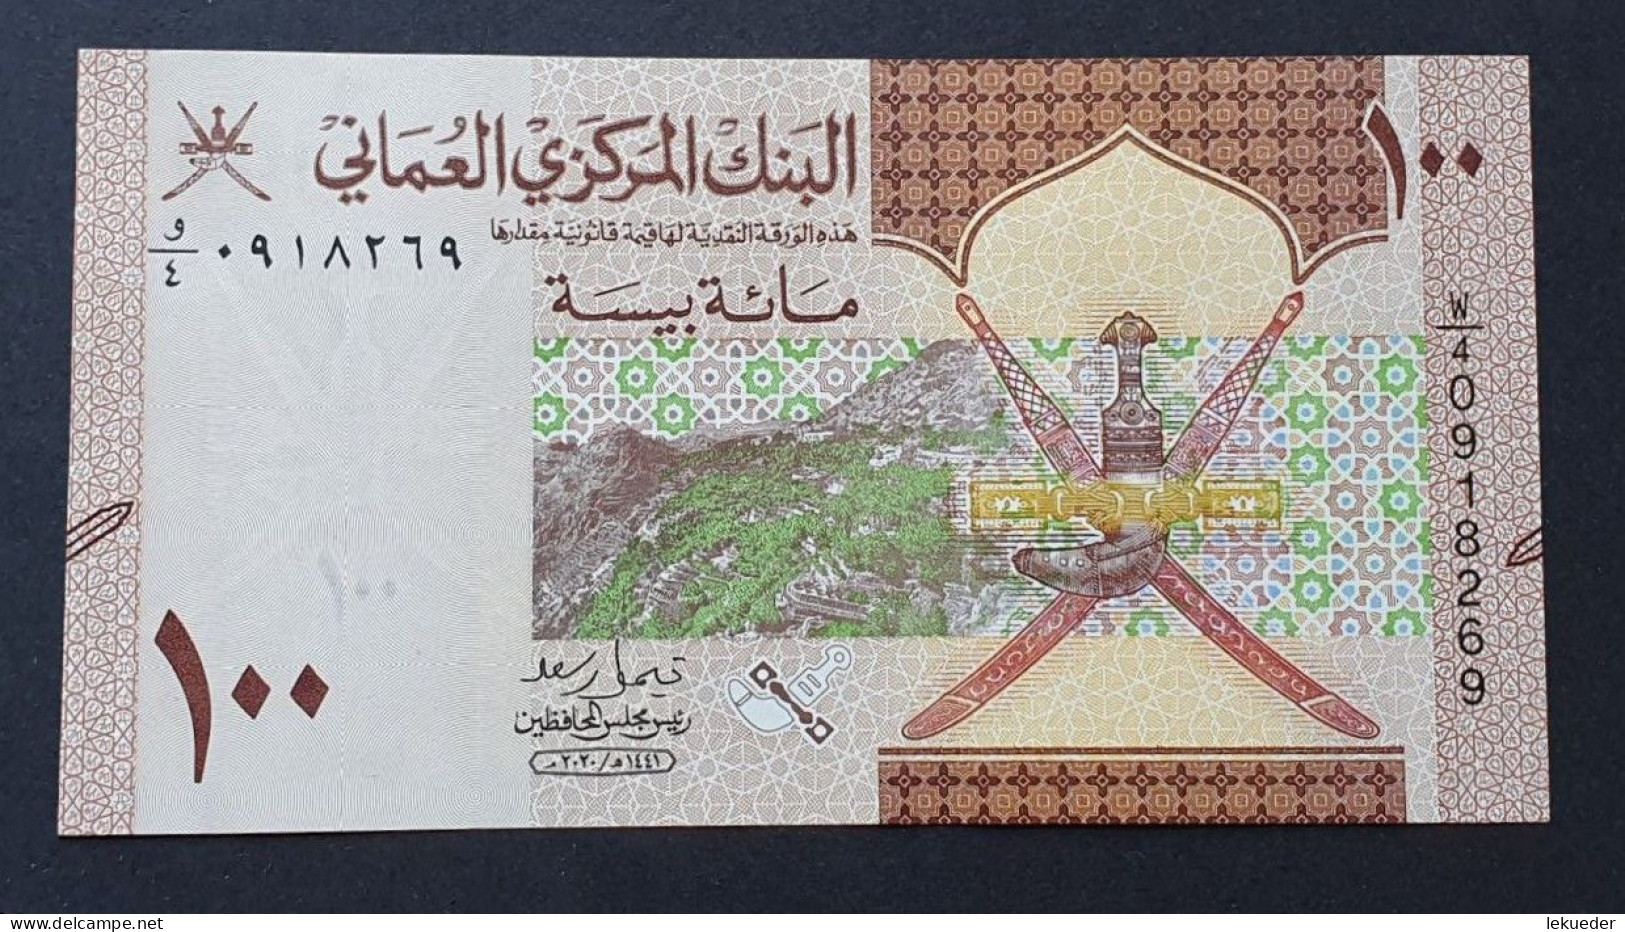 Billete De Banco De OMÁN - 100 Baisa, 2020  Sin Cursar - Oman